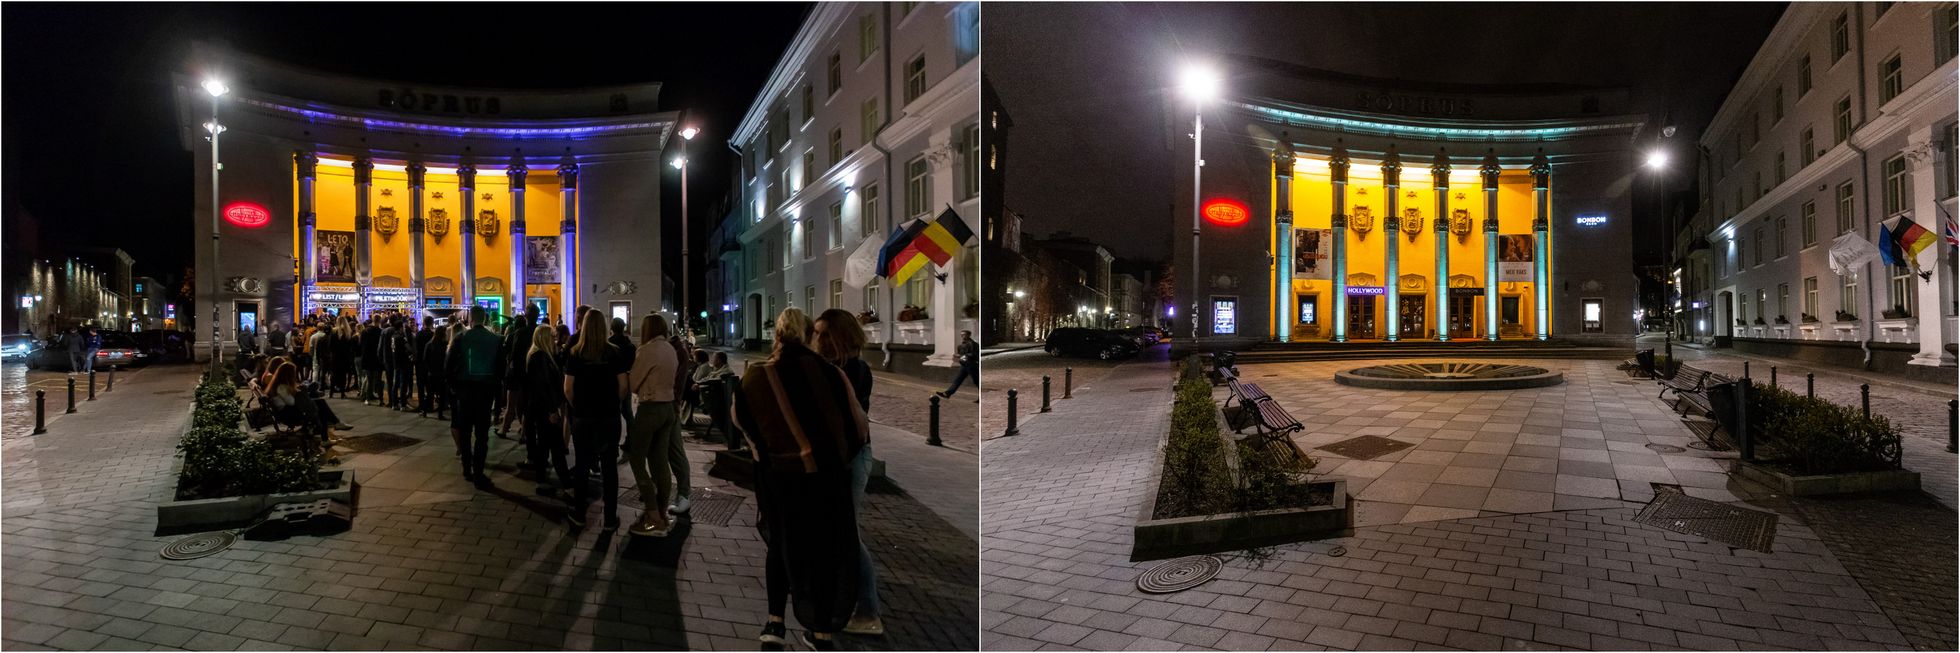 Koroonaviirus: Tallinn enne ja nüüd